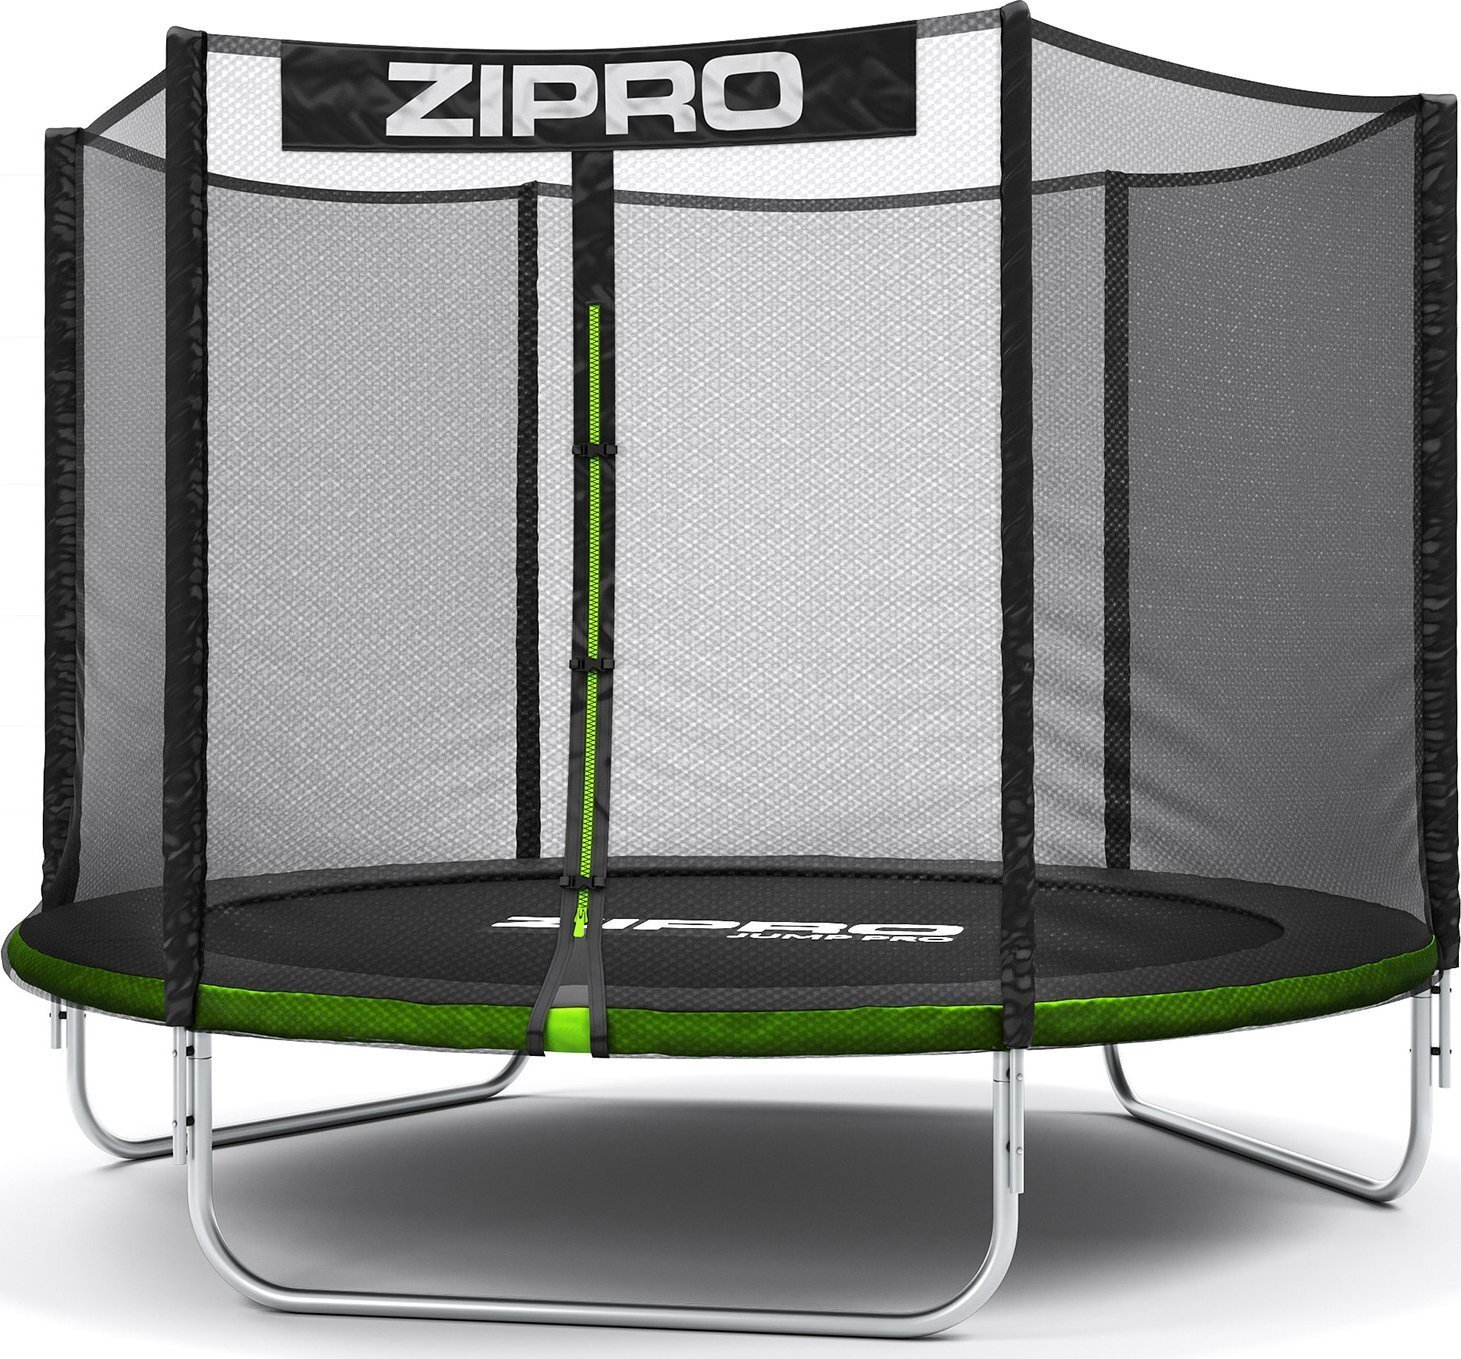 Zipro Jump Pro záhradná trampolína s vonkajšou bezpečnostnou sieťou na topánky a rebríkom 8FT 252 cm